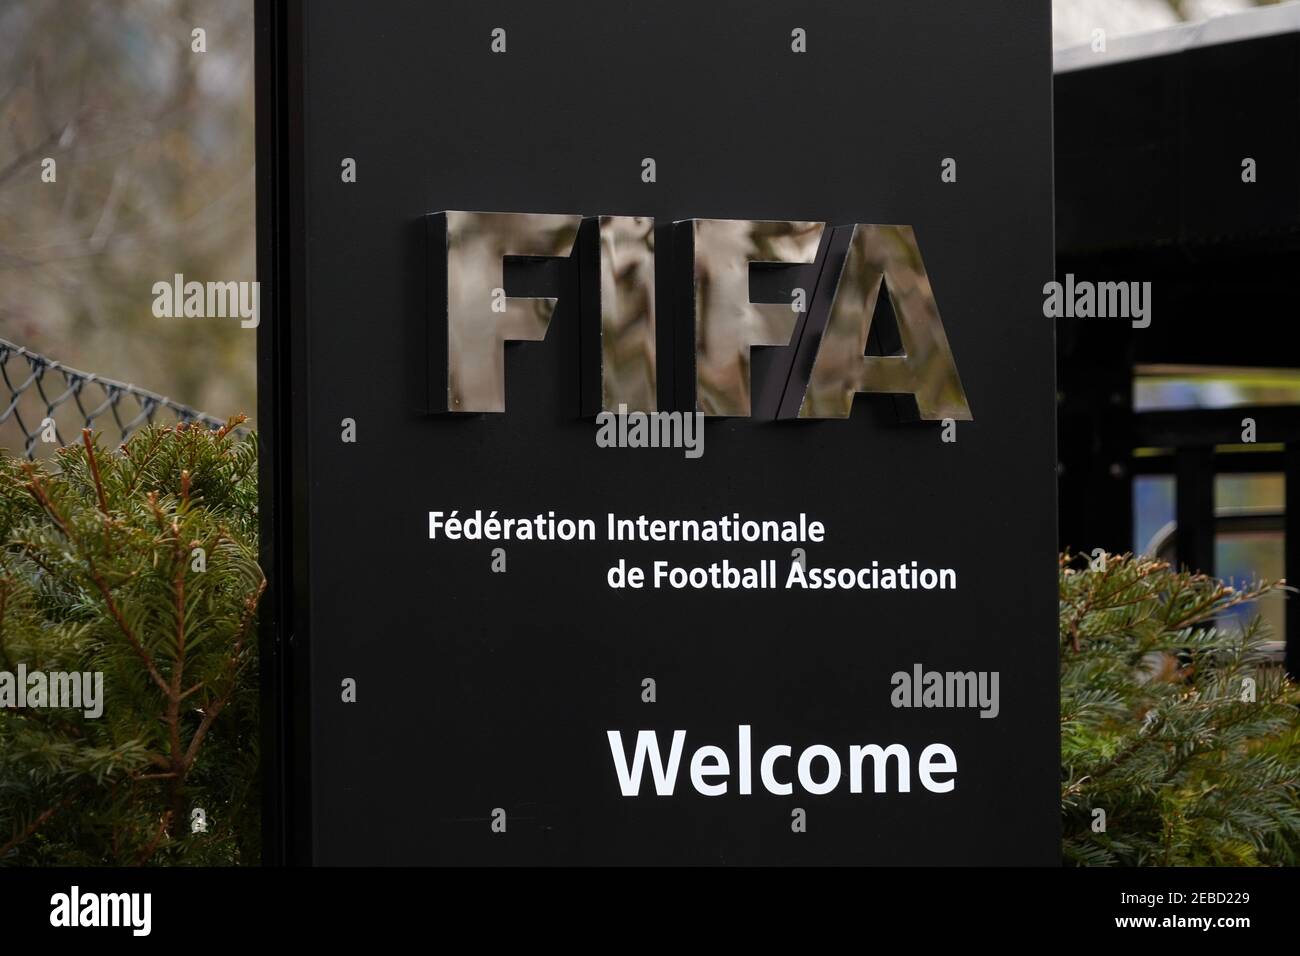 La FIFA signe à l'entrée pour les visiteurs, les accueillant au siège de Zurich. Il y a un nom complet de l'association en français. Banque D'Images